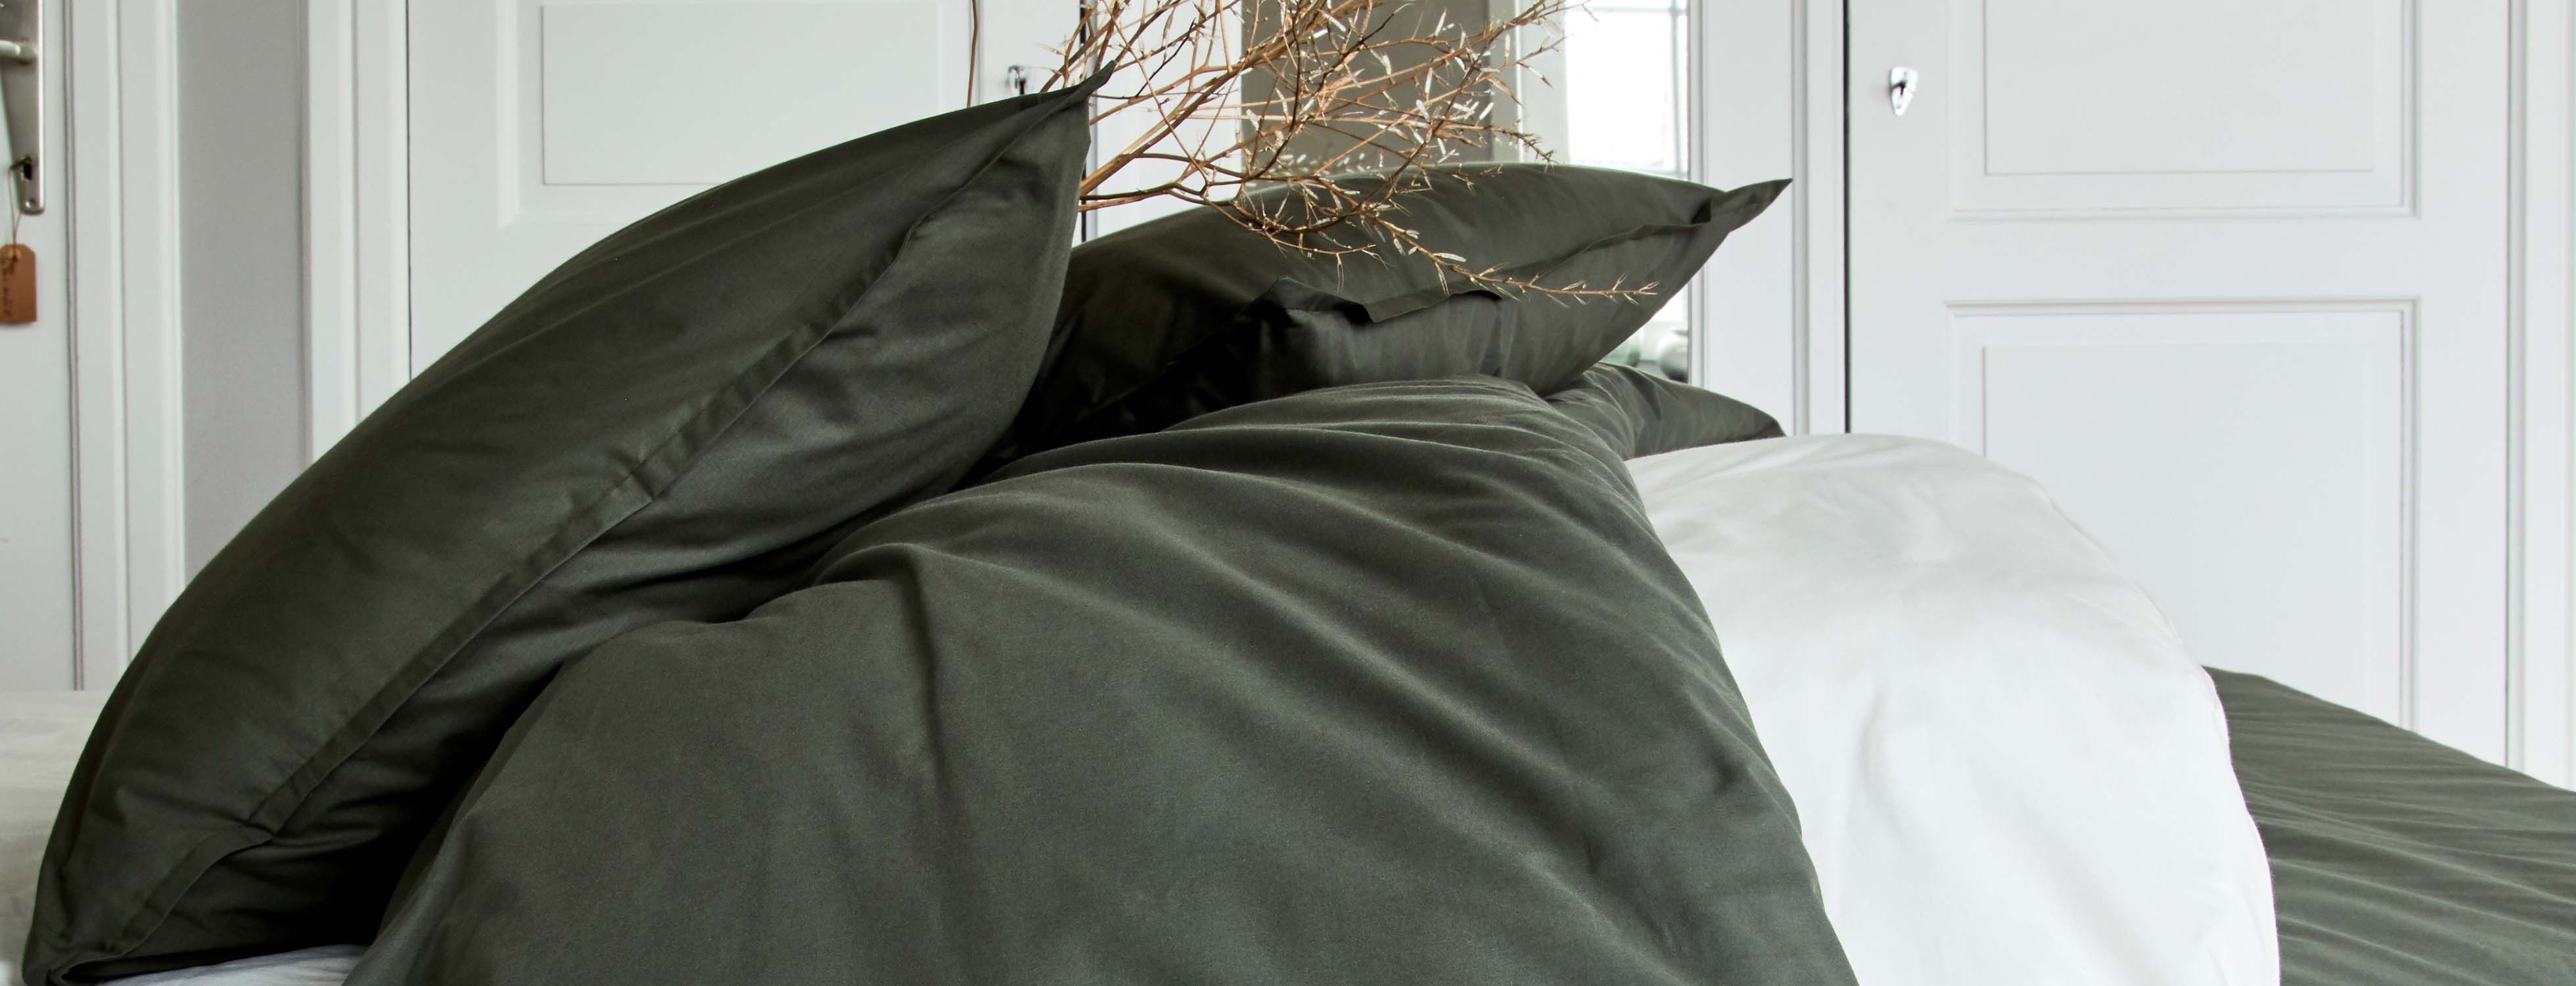 Linge de lit en percale de coton Flore, achat en ligne | alinea.com